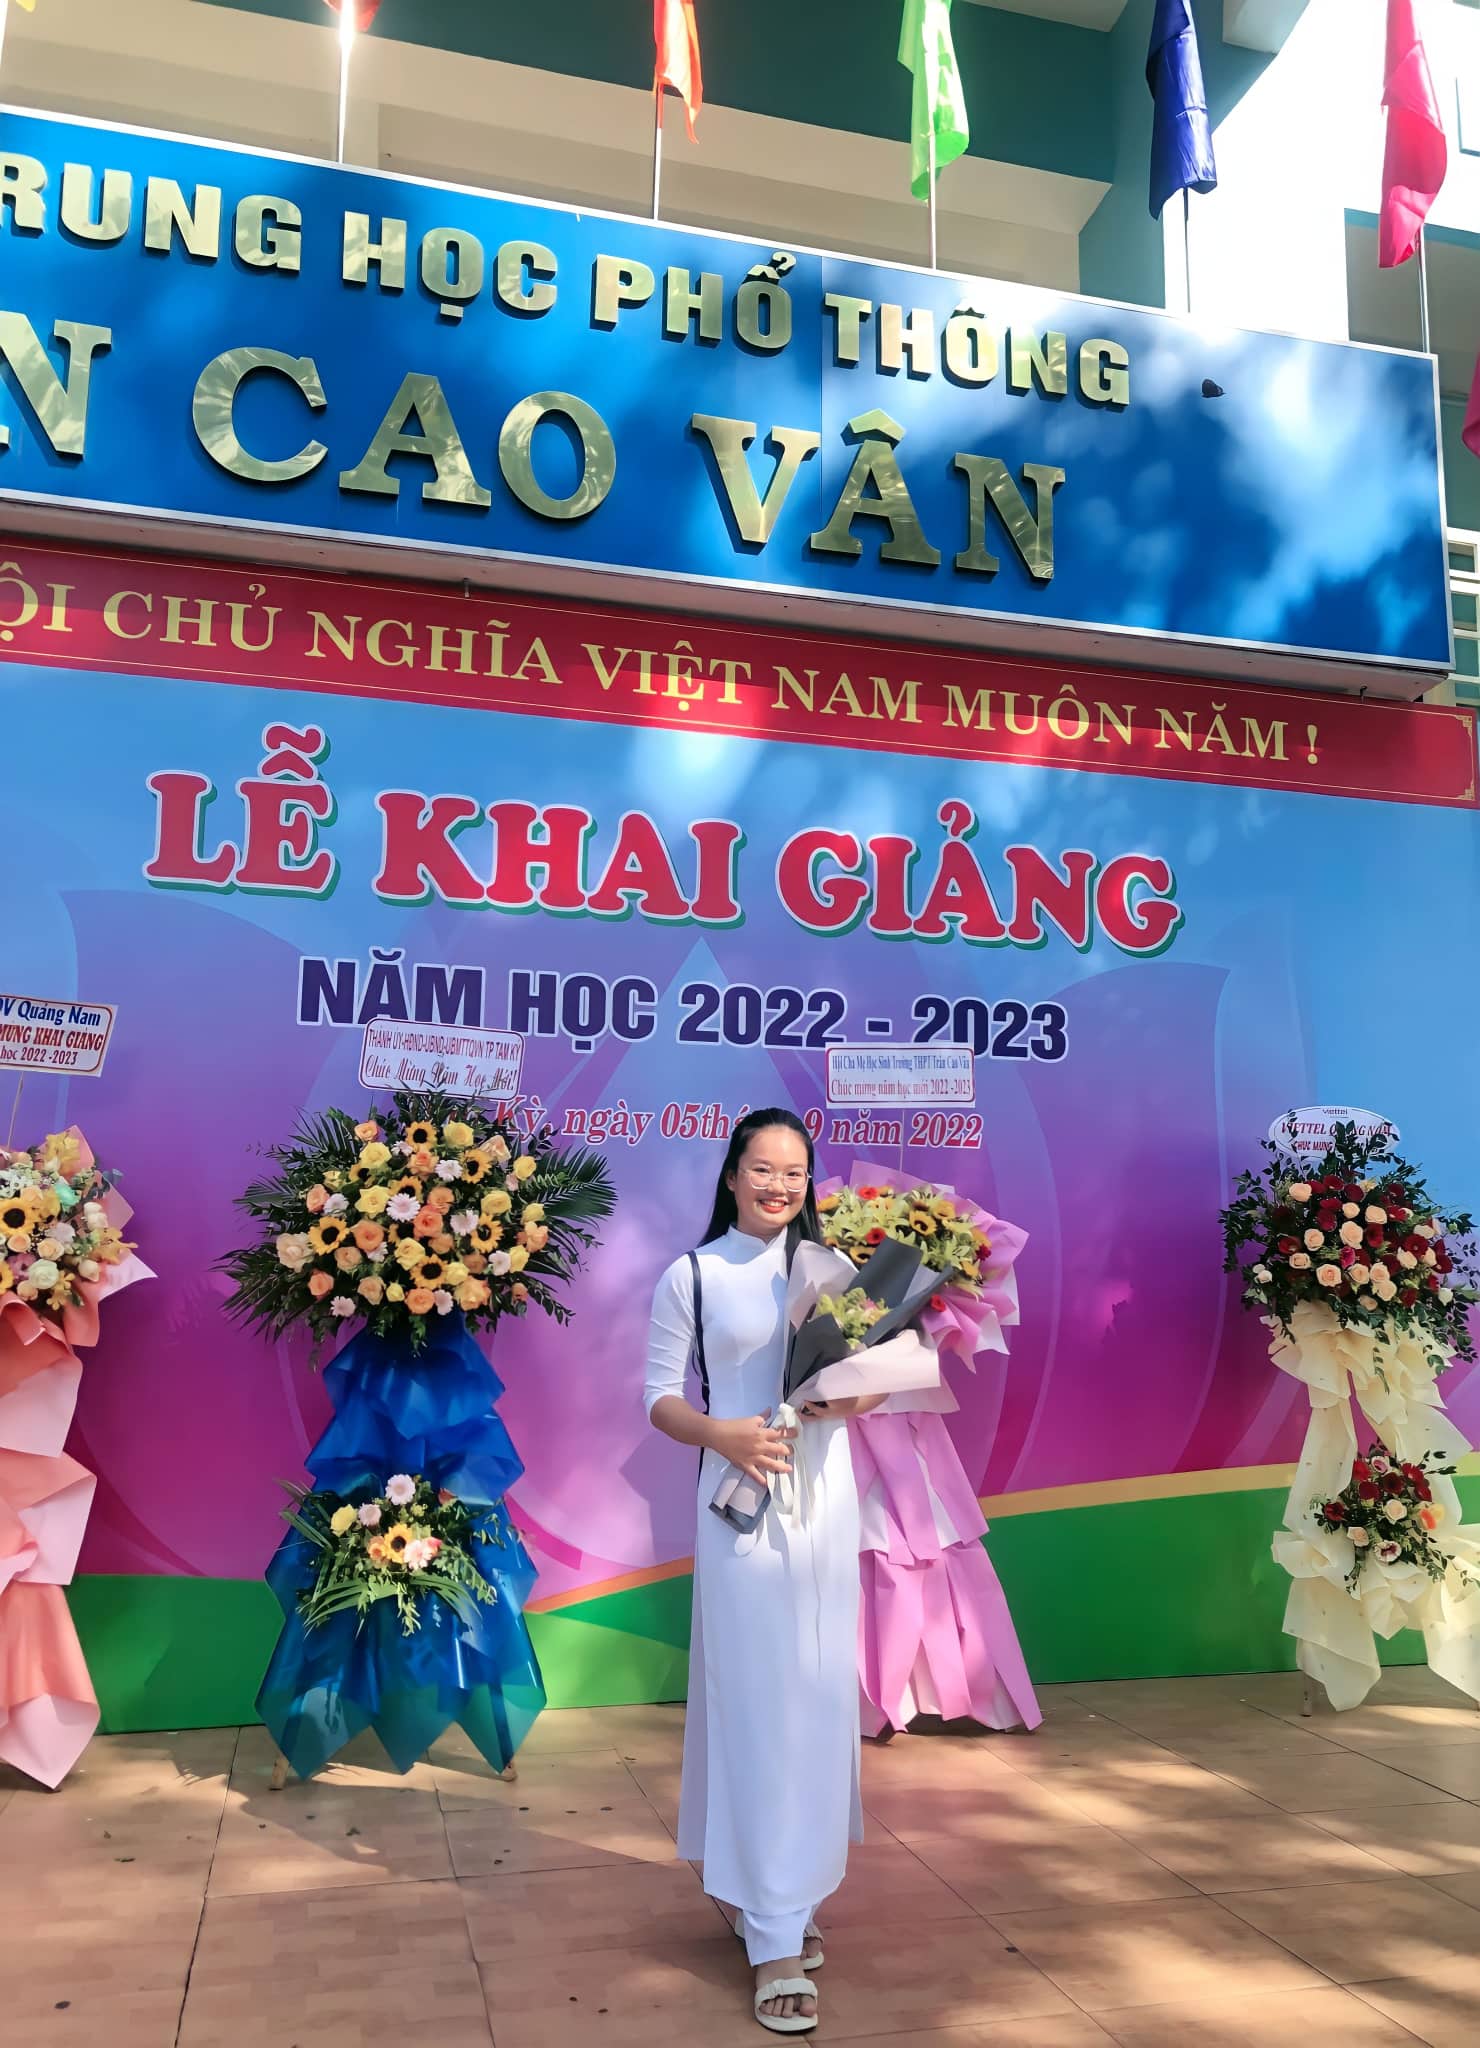 Nữ sinh Quảng Nam đỗ 4 trường THPT tại Mỹ với tổng giá trị học bổng lên đến 6,8 tỷ đồng - Ảnh 3.